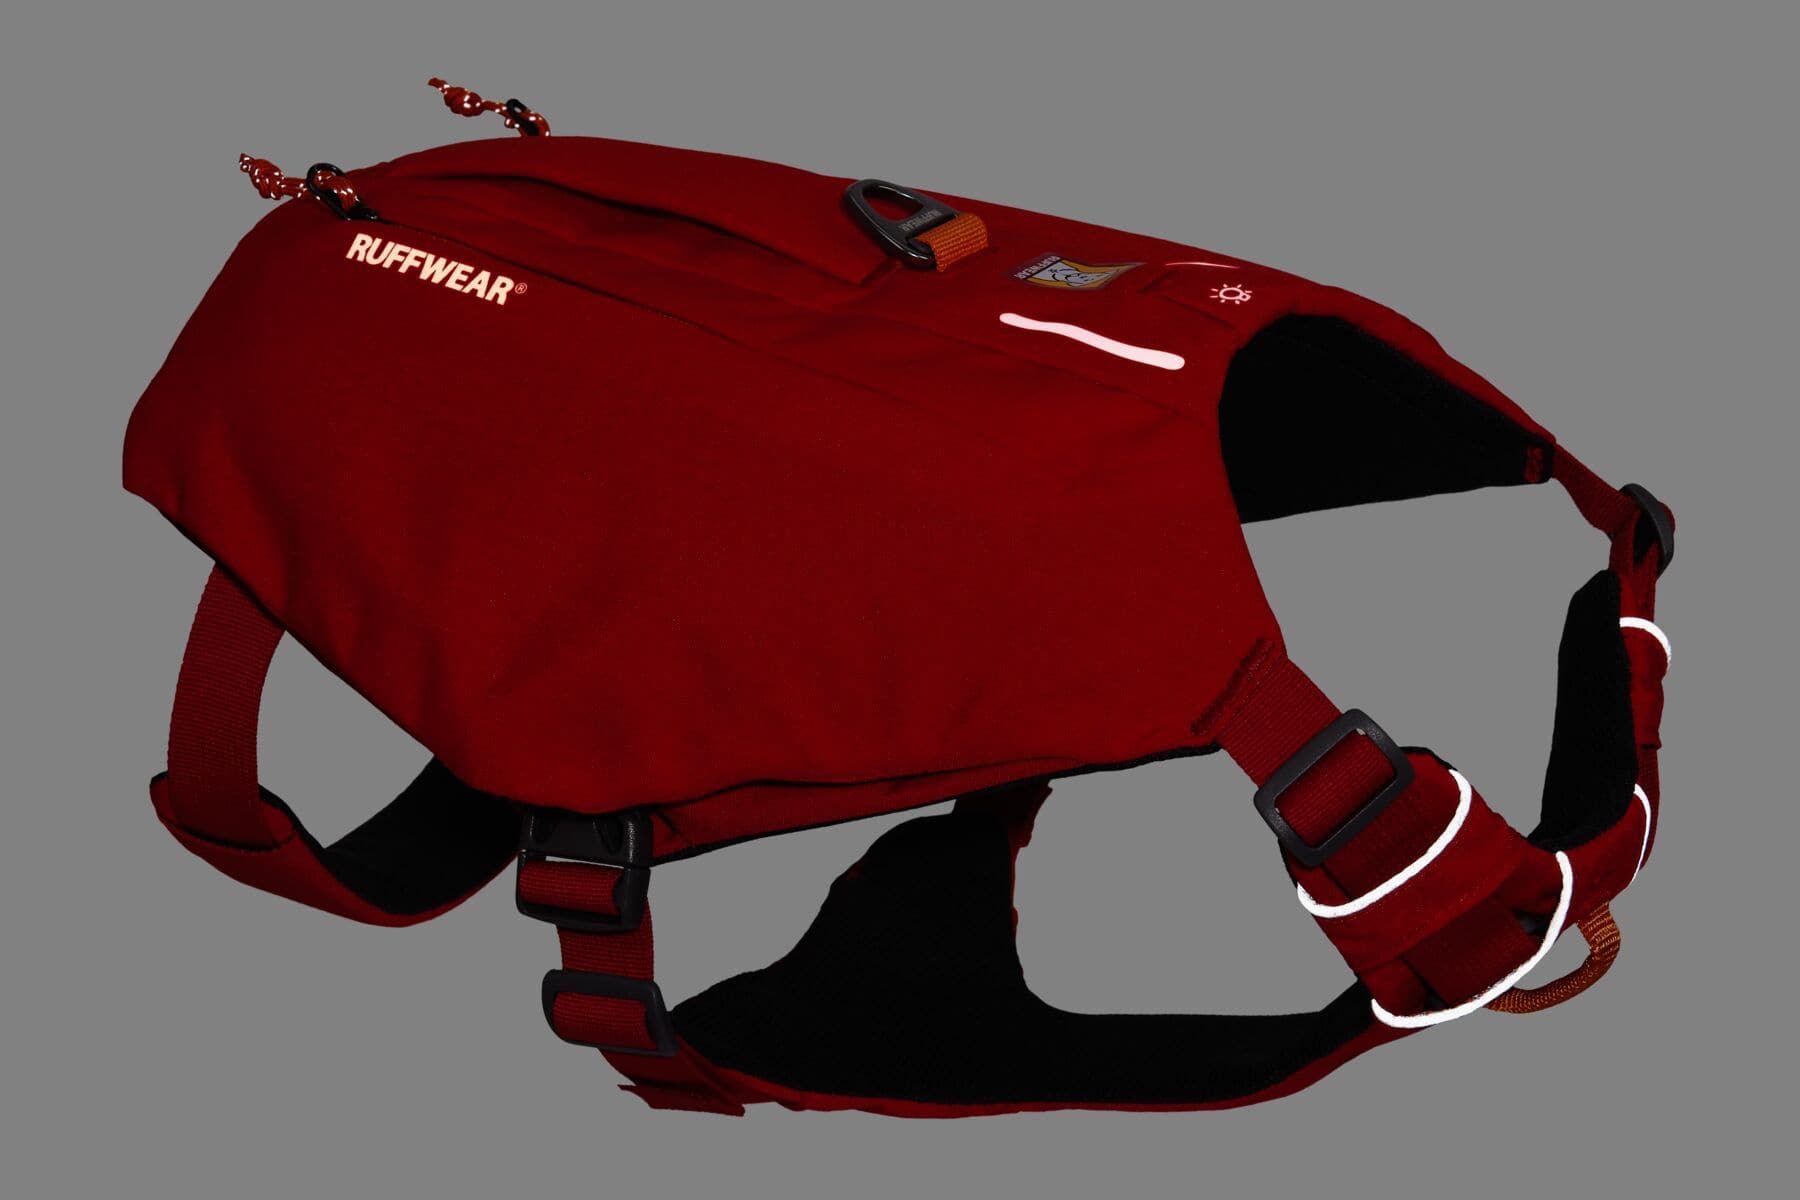 Pechera/Alforja Minimalista Switchbak en Rojo (Red Sumac) de Ruffwear